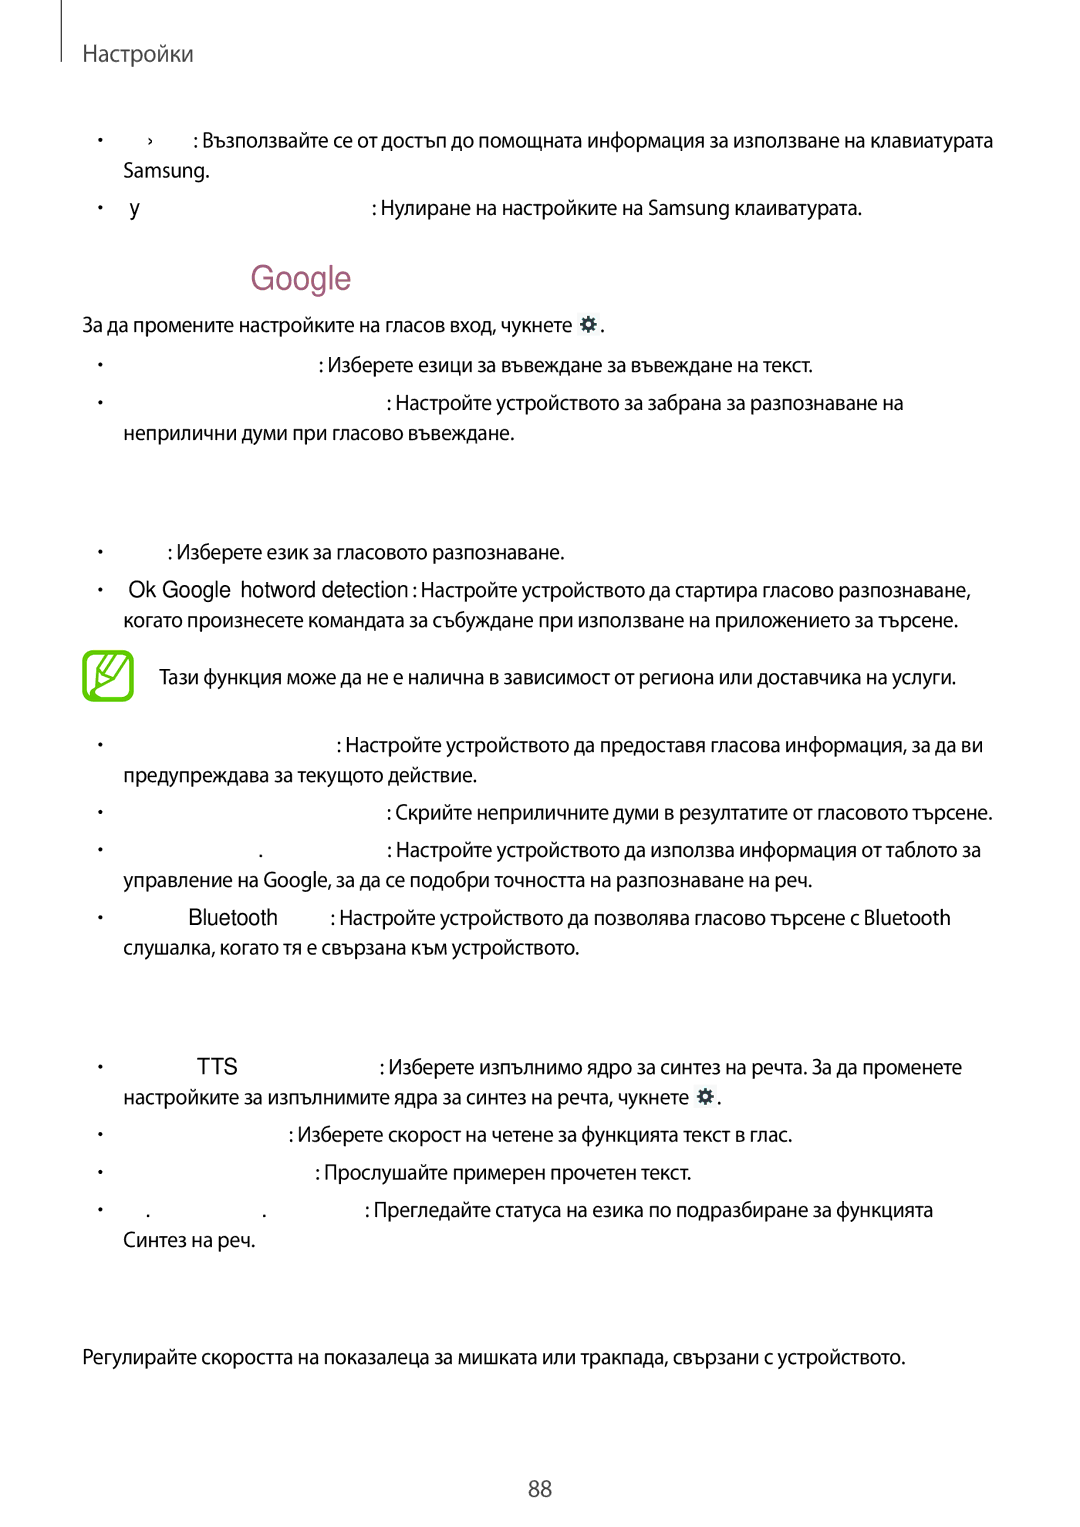 Samsung GT-P5210MKABGL manual Гласово въвеждане с Google, Гласово търсене, Опции за синтез на реч, Скорост на показалеца 